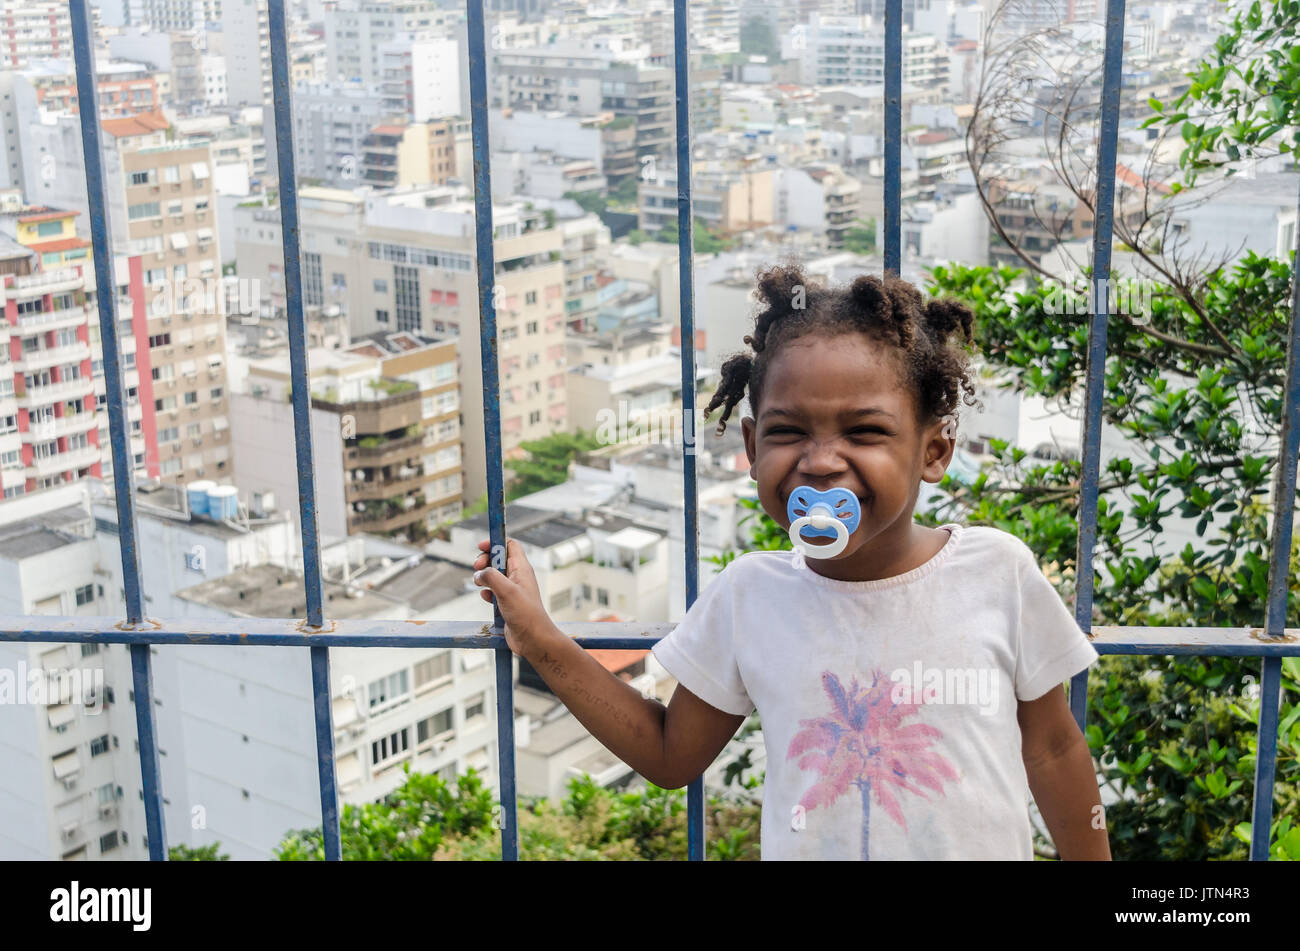 Una chica (4-6) sonríe con Ipanema, Rio de Janeiro antecedentes. Un mensaje escrito a una chica del brazo que se traduce a "I miss you mom". Tomada en Cantagalo Foto de stock